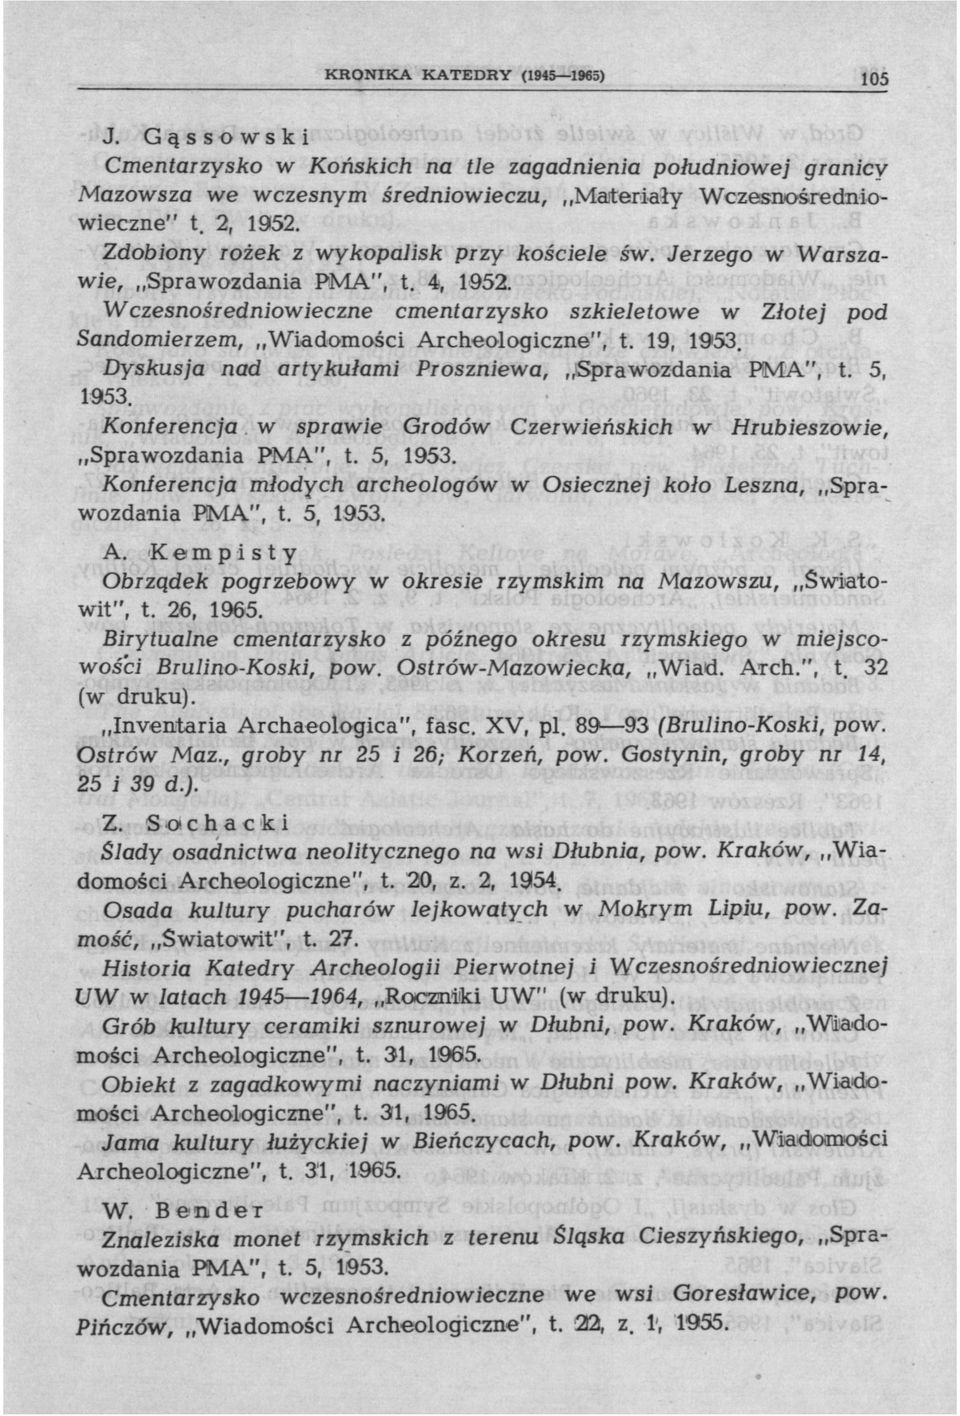 Wczesnośredniowieczne cmentarzysko szkieletowe w Złotej pod Sandomierzem, Wiadomości Archeologiczne", t. 19, 1953. Dyskusja nad artykułami Proszniewa, Sprawozdania PMA", t. 5, 1953.